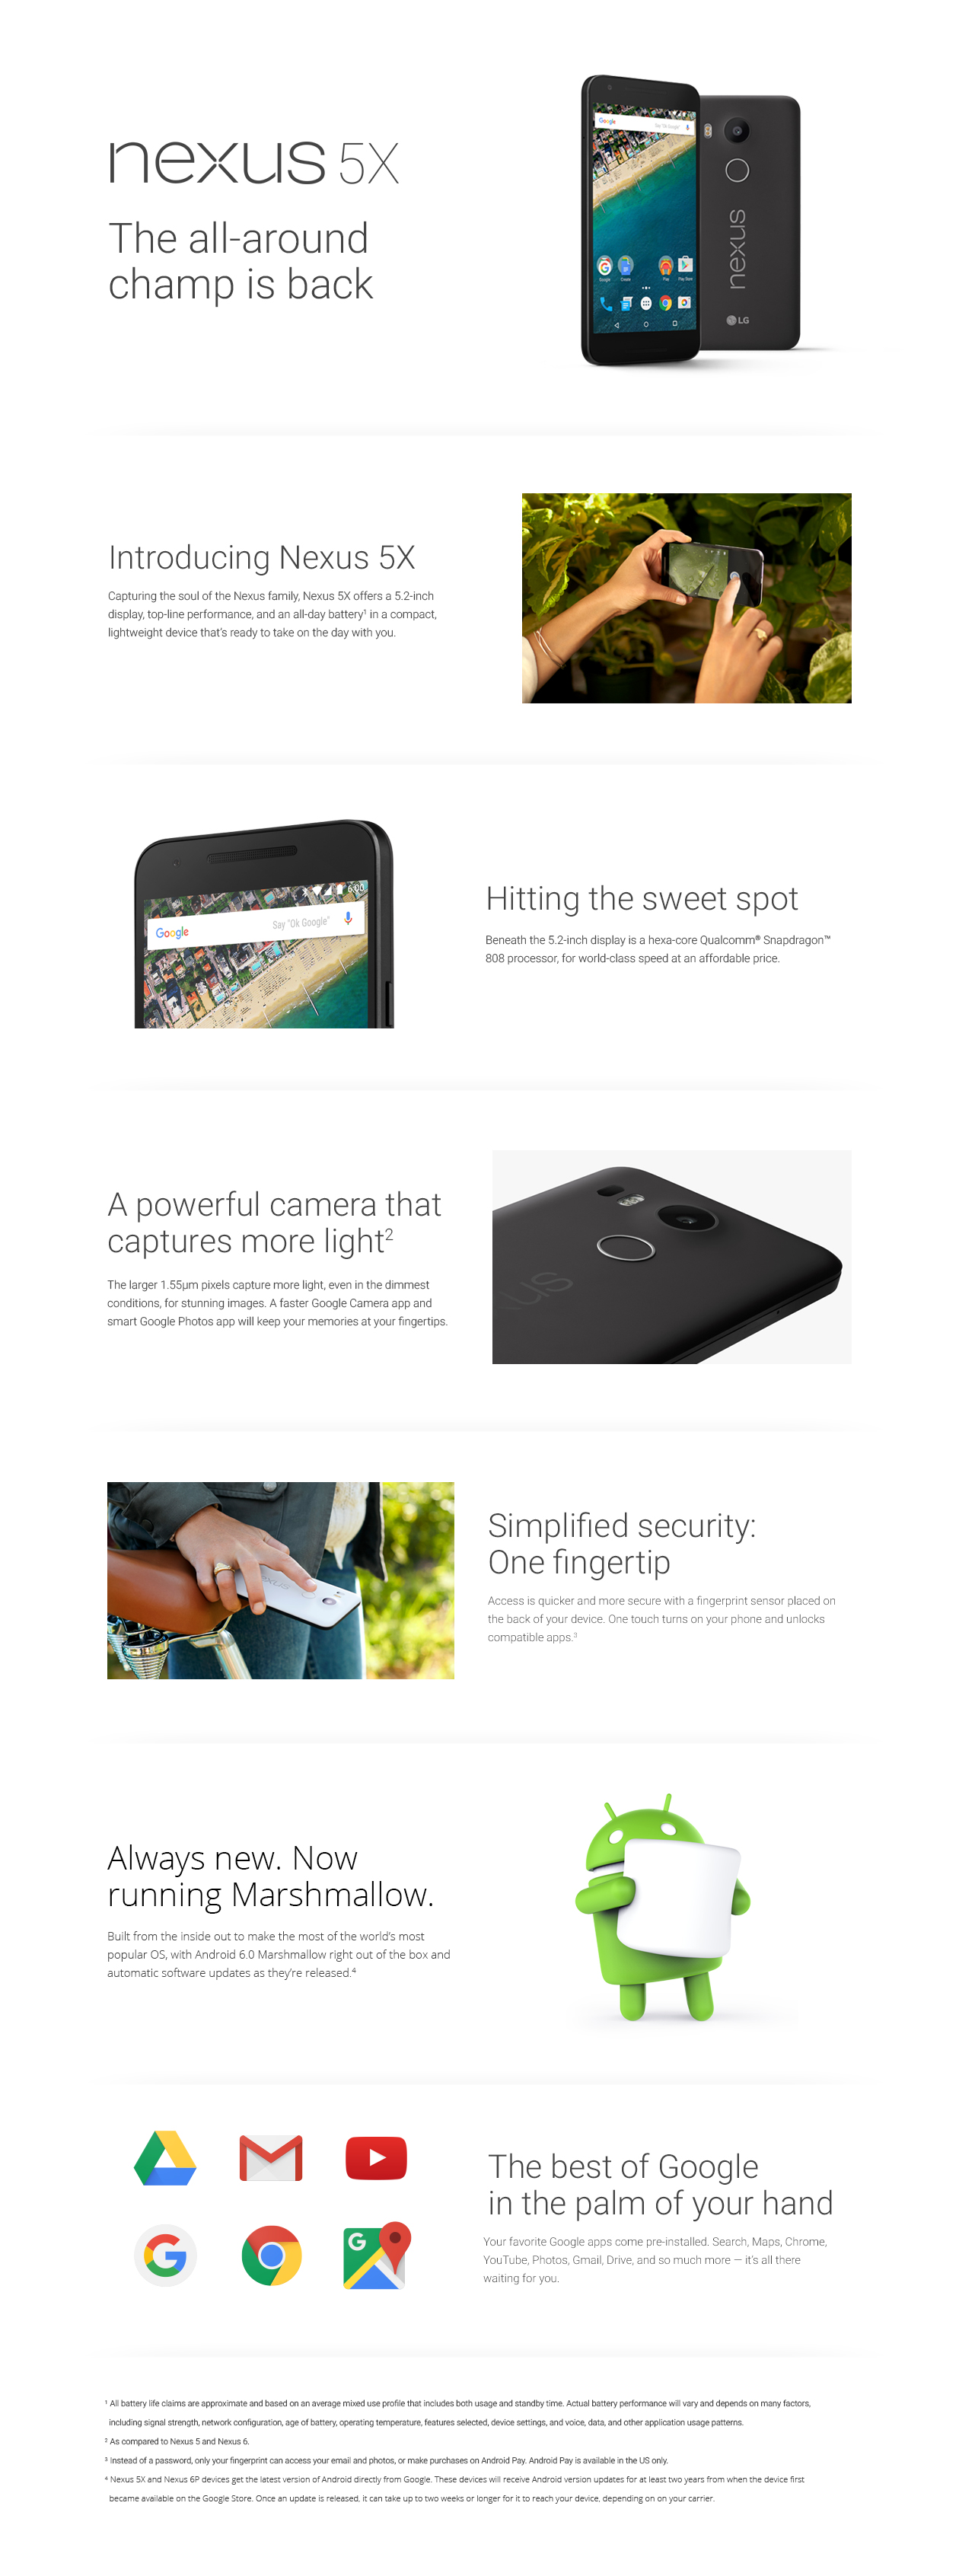 Vuodettu dokumentti Nexus 5X:stä